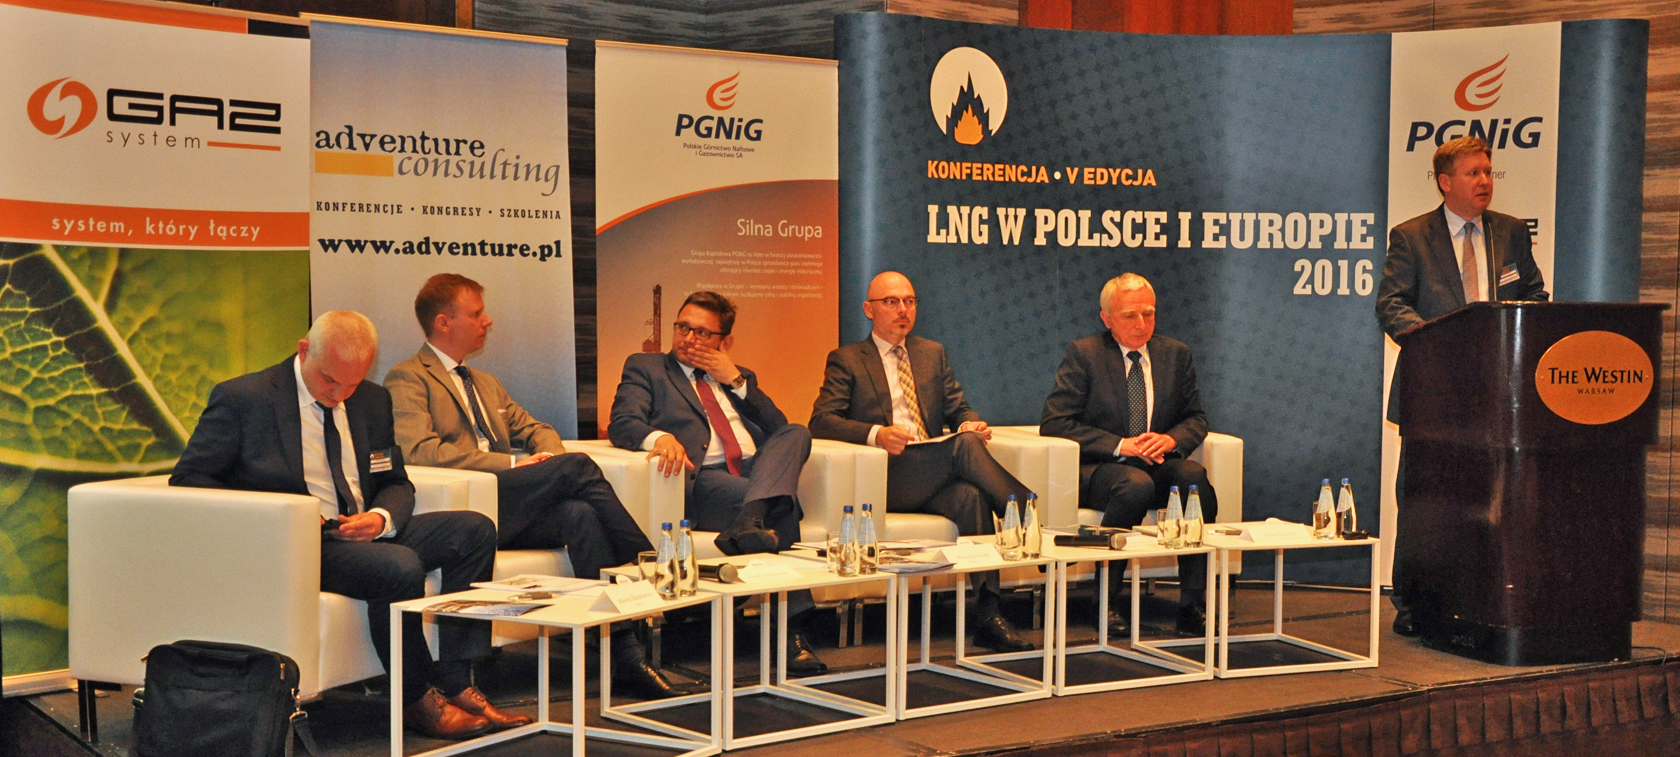 "LNG w Polsce i Europie" - w historycznym momencie